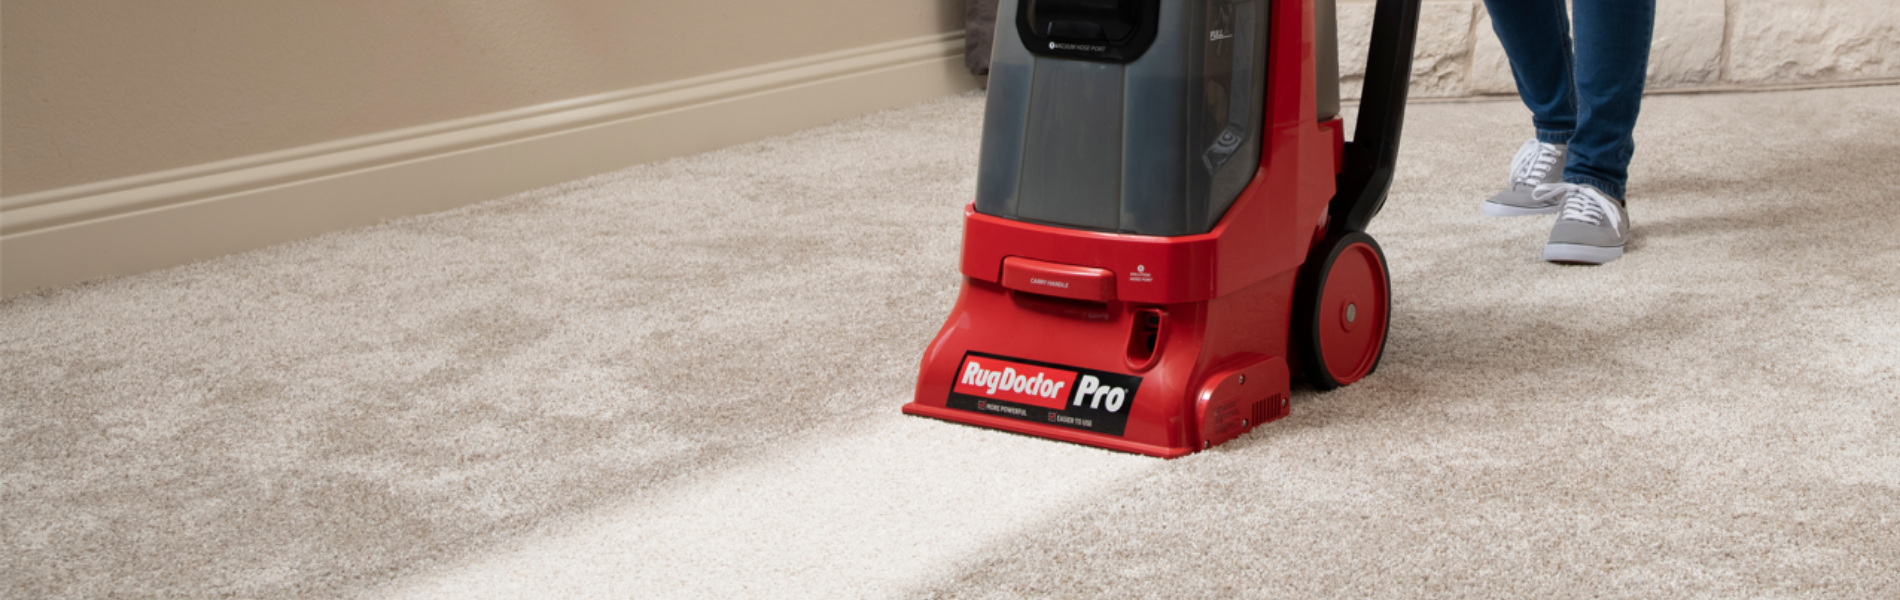 Pro Deep Carpet Cleaner - Rug Doctor